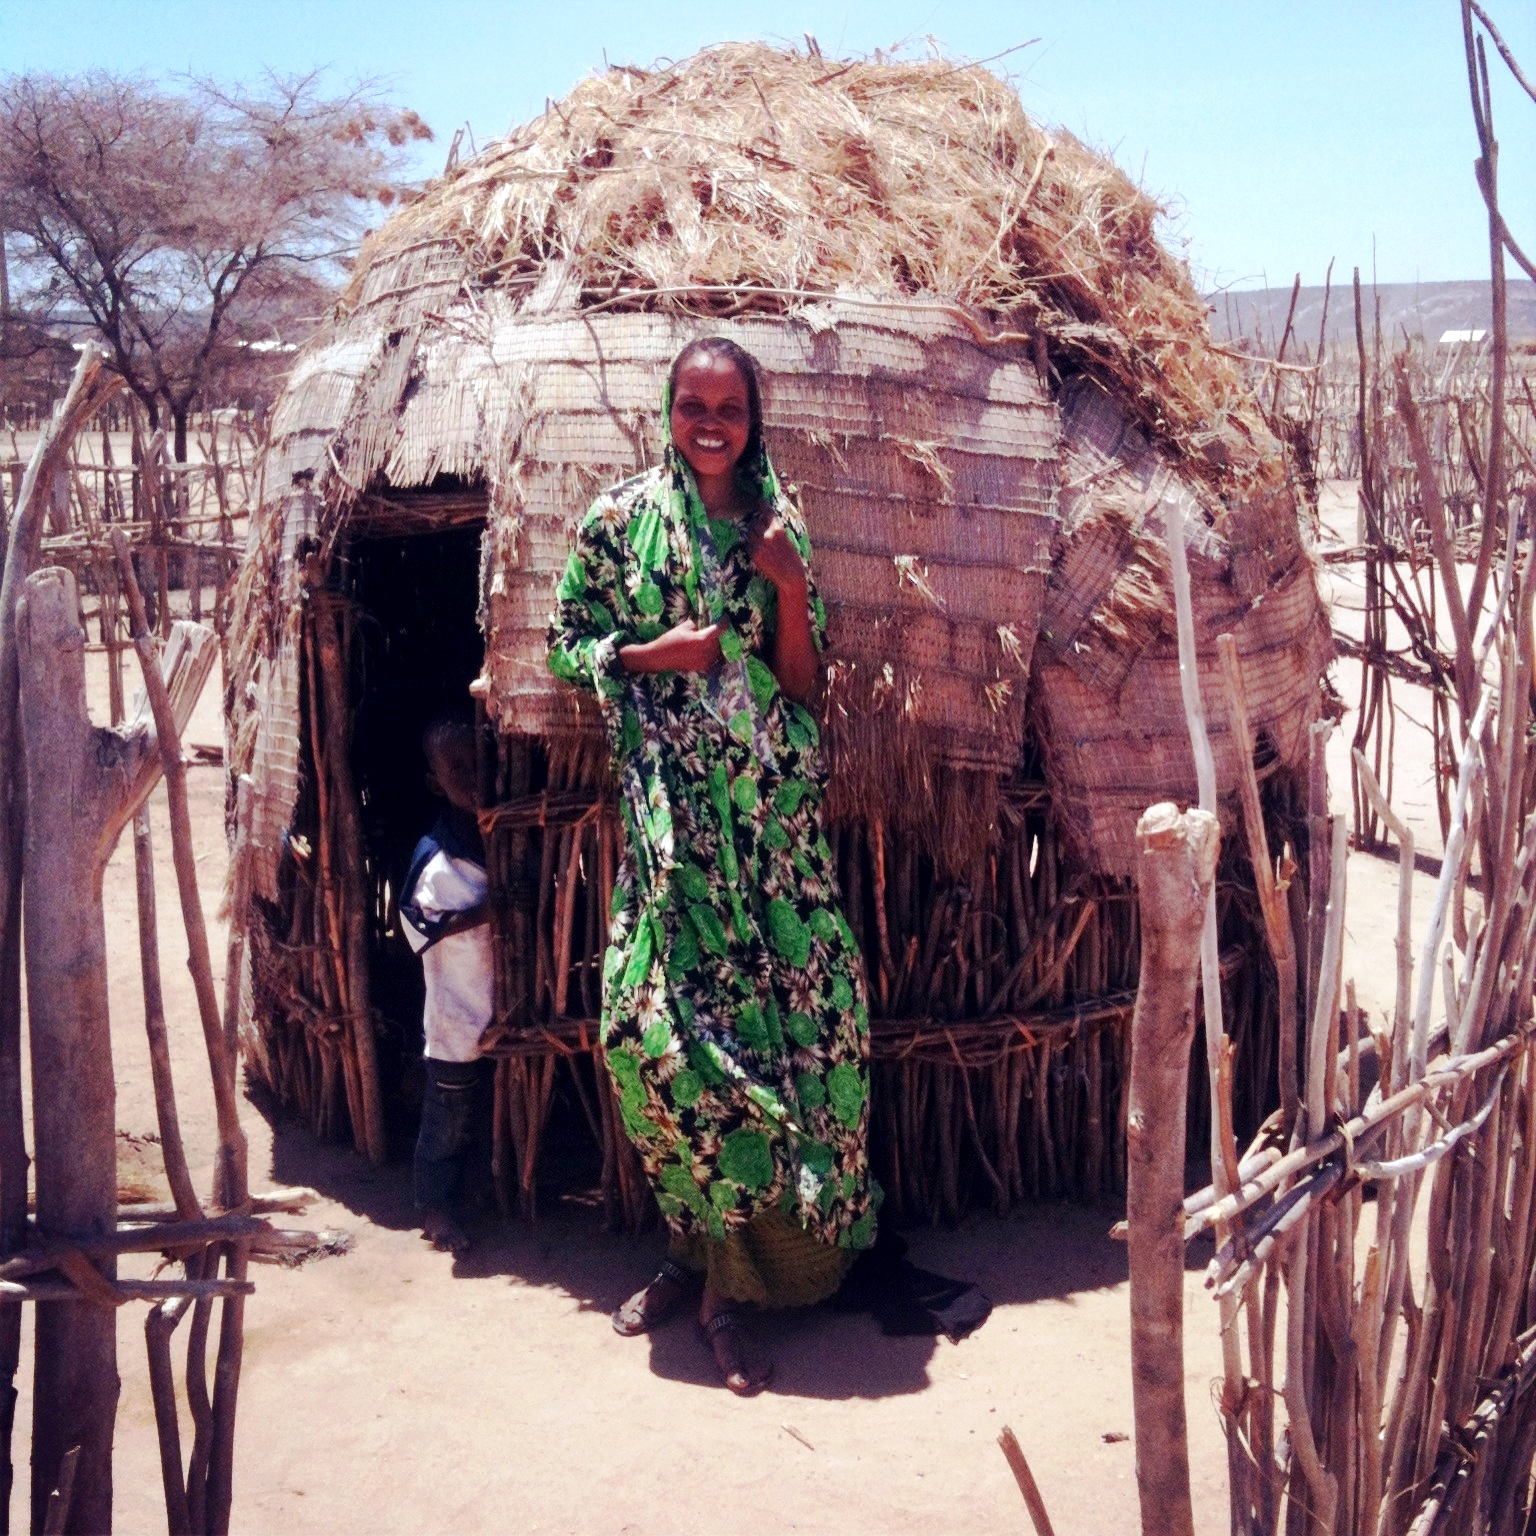 Woman in front of a manyatta (a Masai or Samburu settlement)